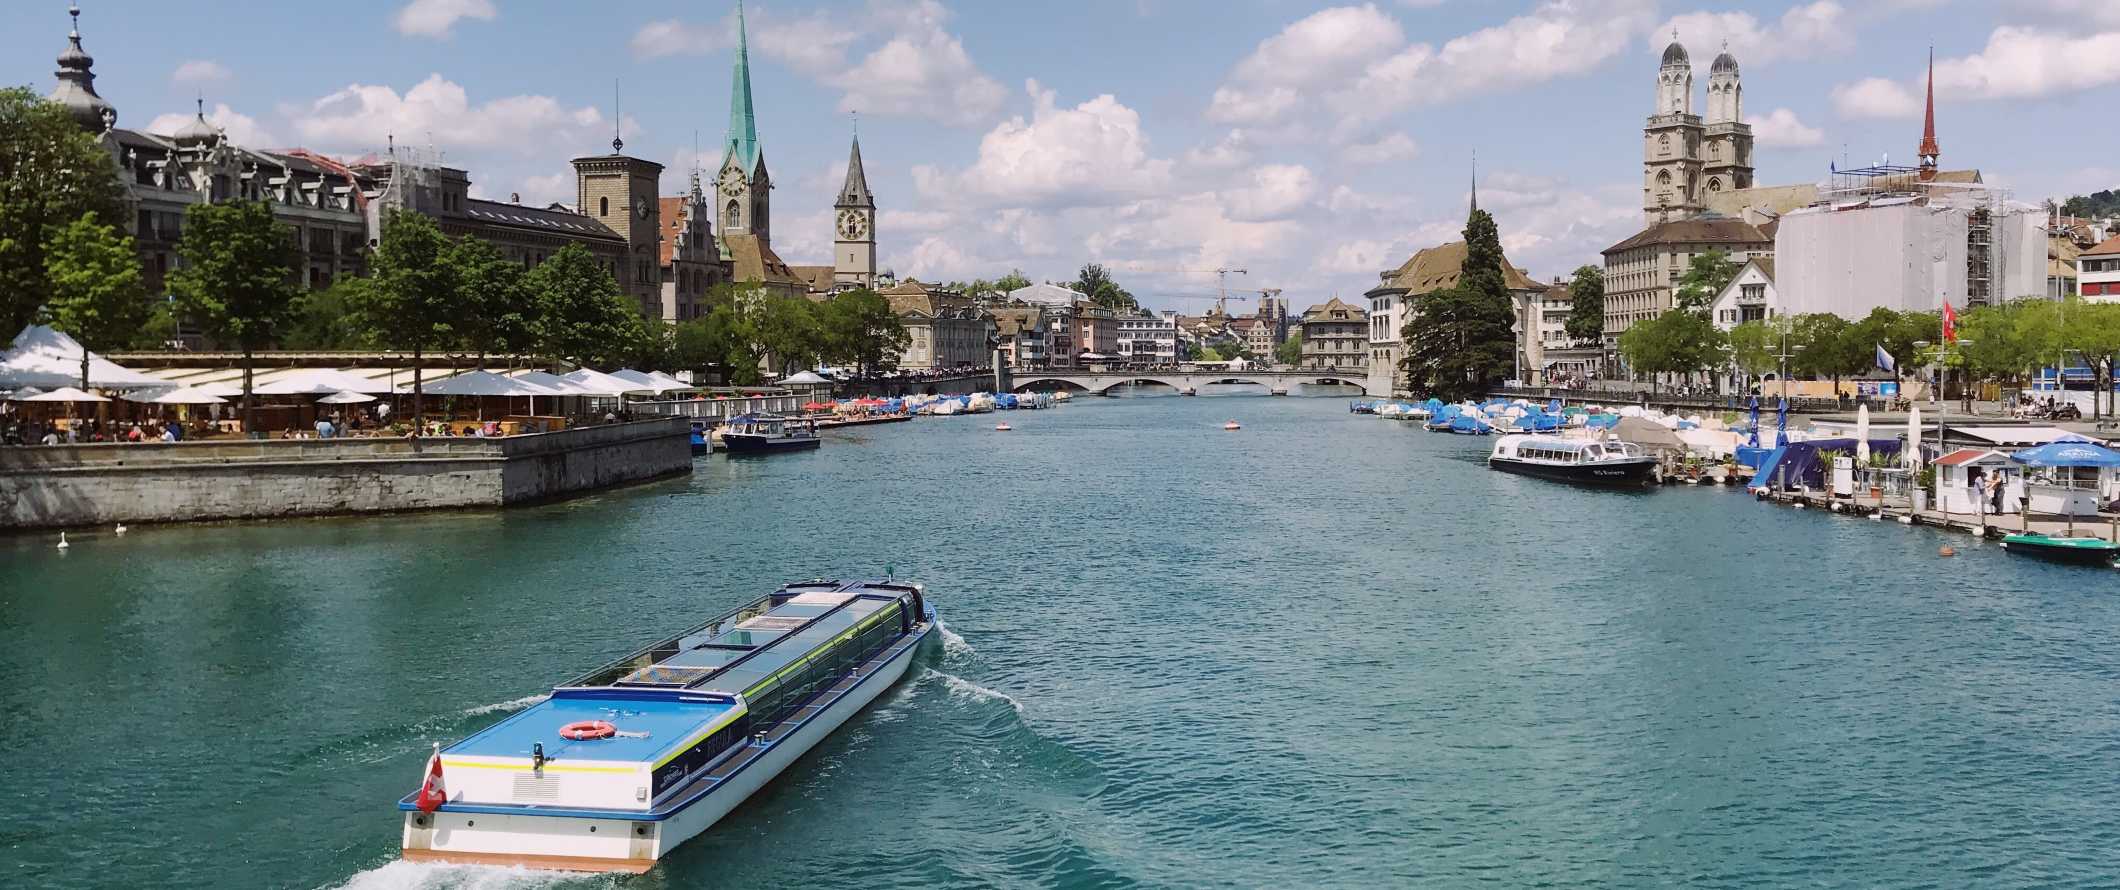 O barco desce ao longo do rio em Zurique, na Suíça